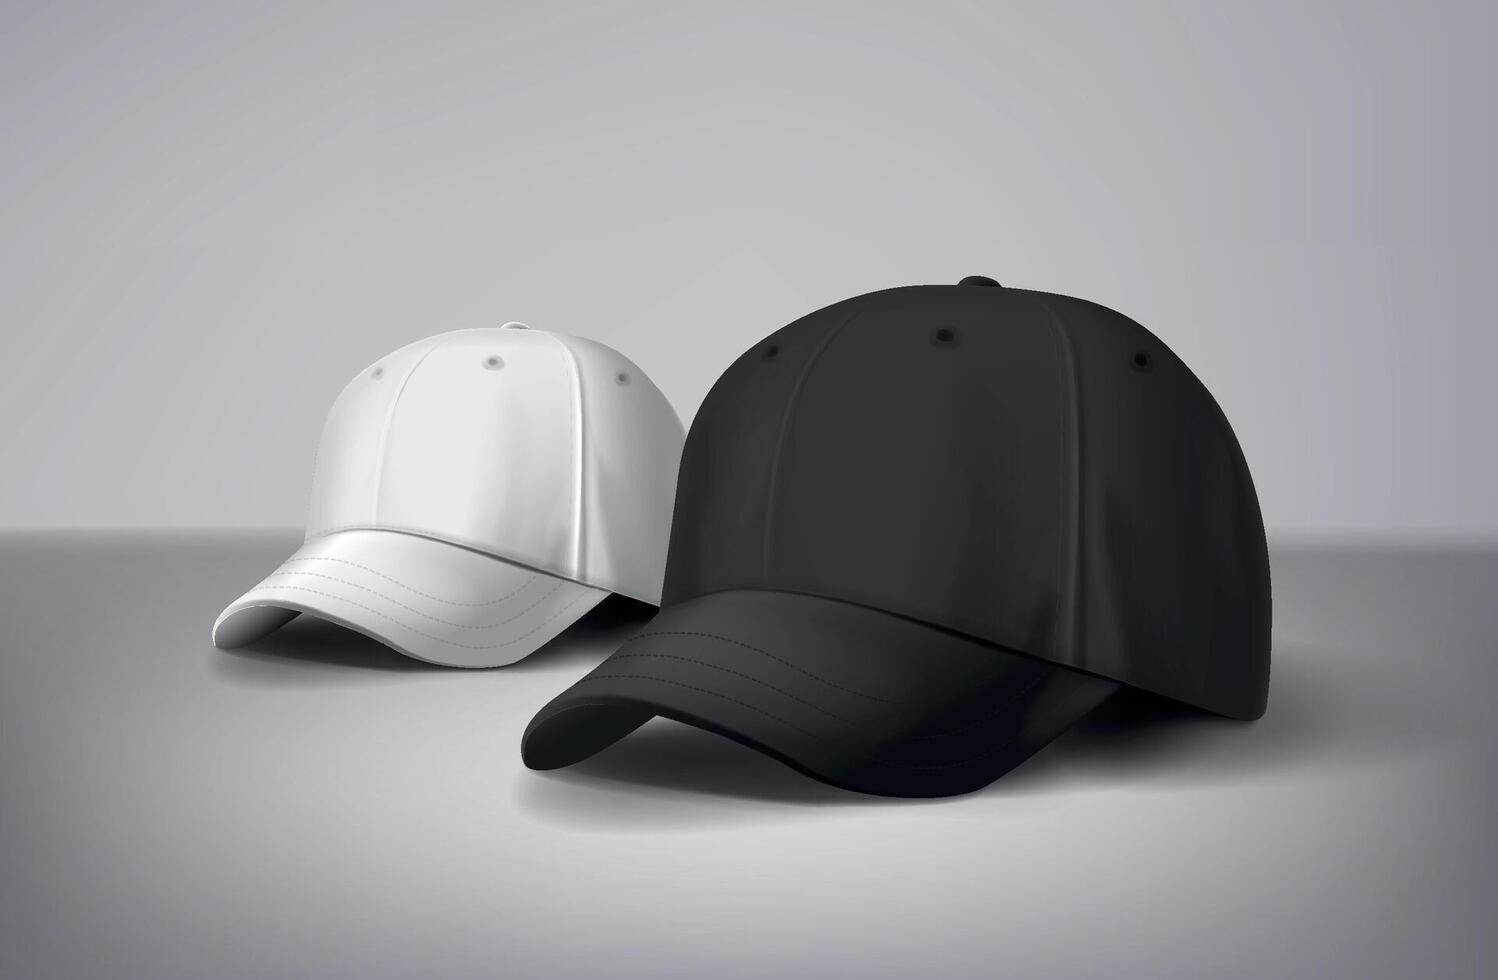 schwarz und Weiß Baseball Kappen spotten oben im grau Hintergrund, Vorderseite und zurück oder anders Seiten. zum branding und Werbung. vektor